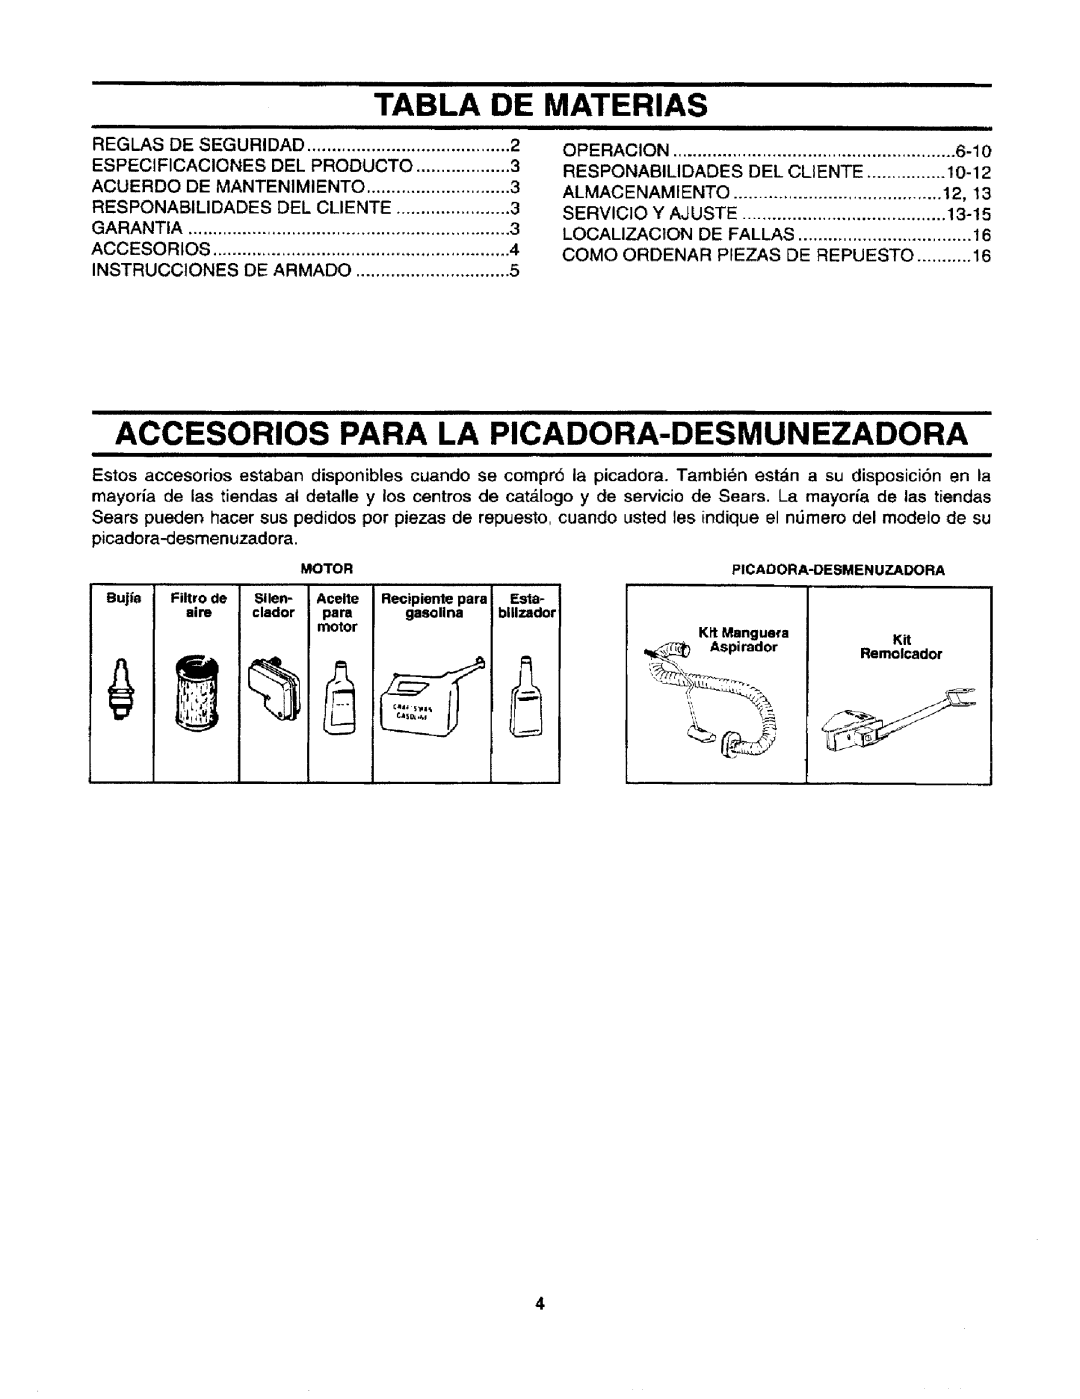 Craftsman 247.795940 manual Tabla, De Materias, Accesorios Para La Picadora-Desmunezadora 